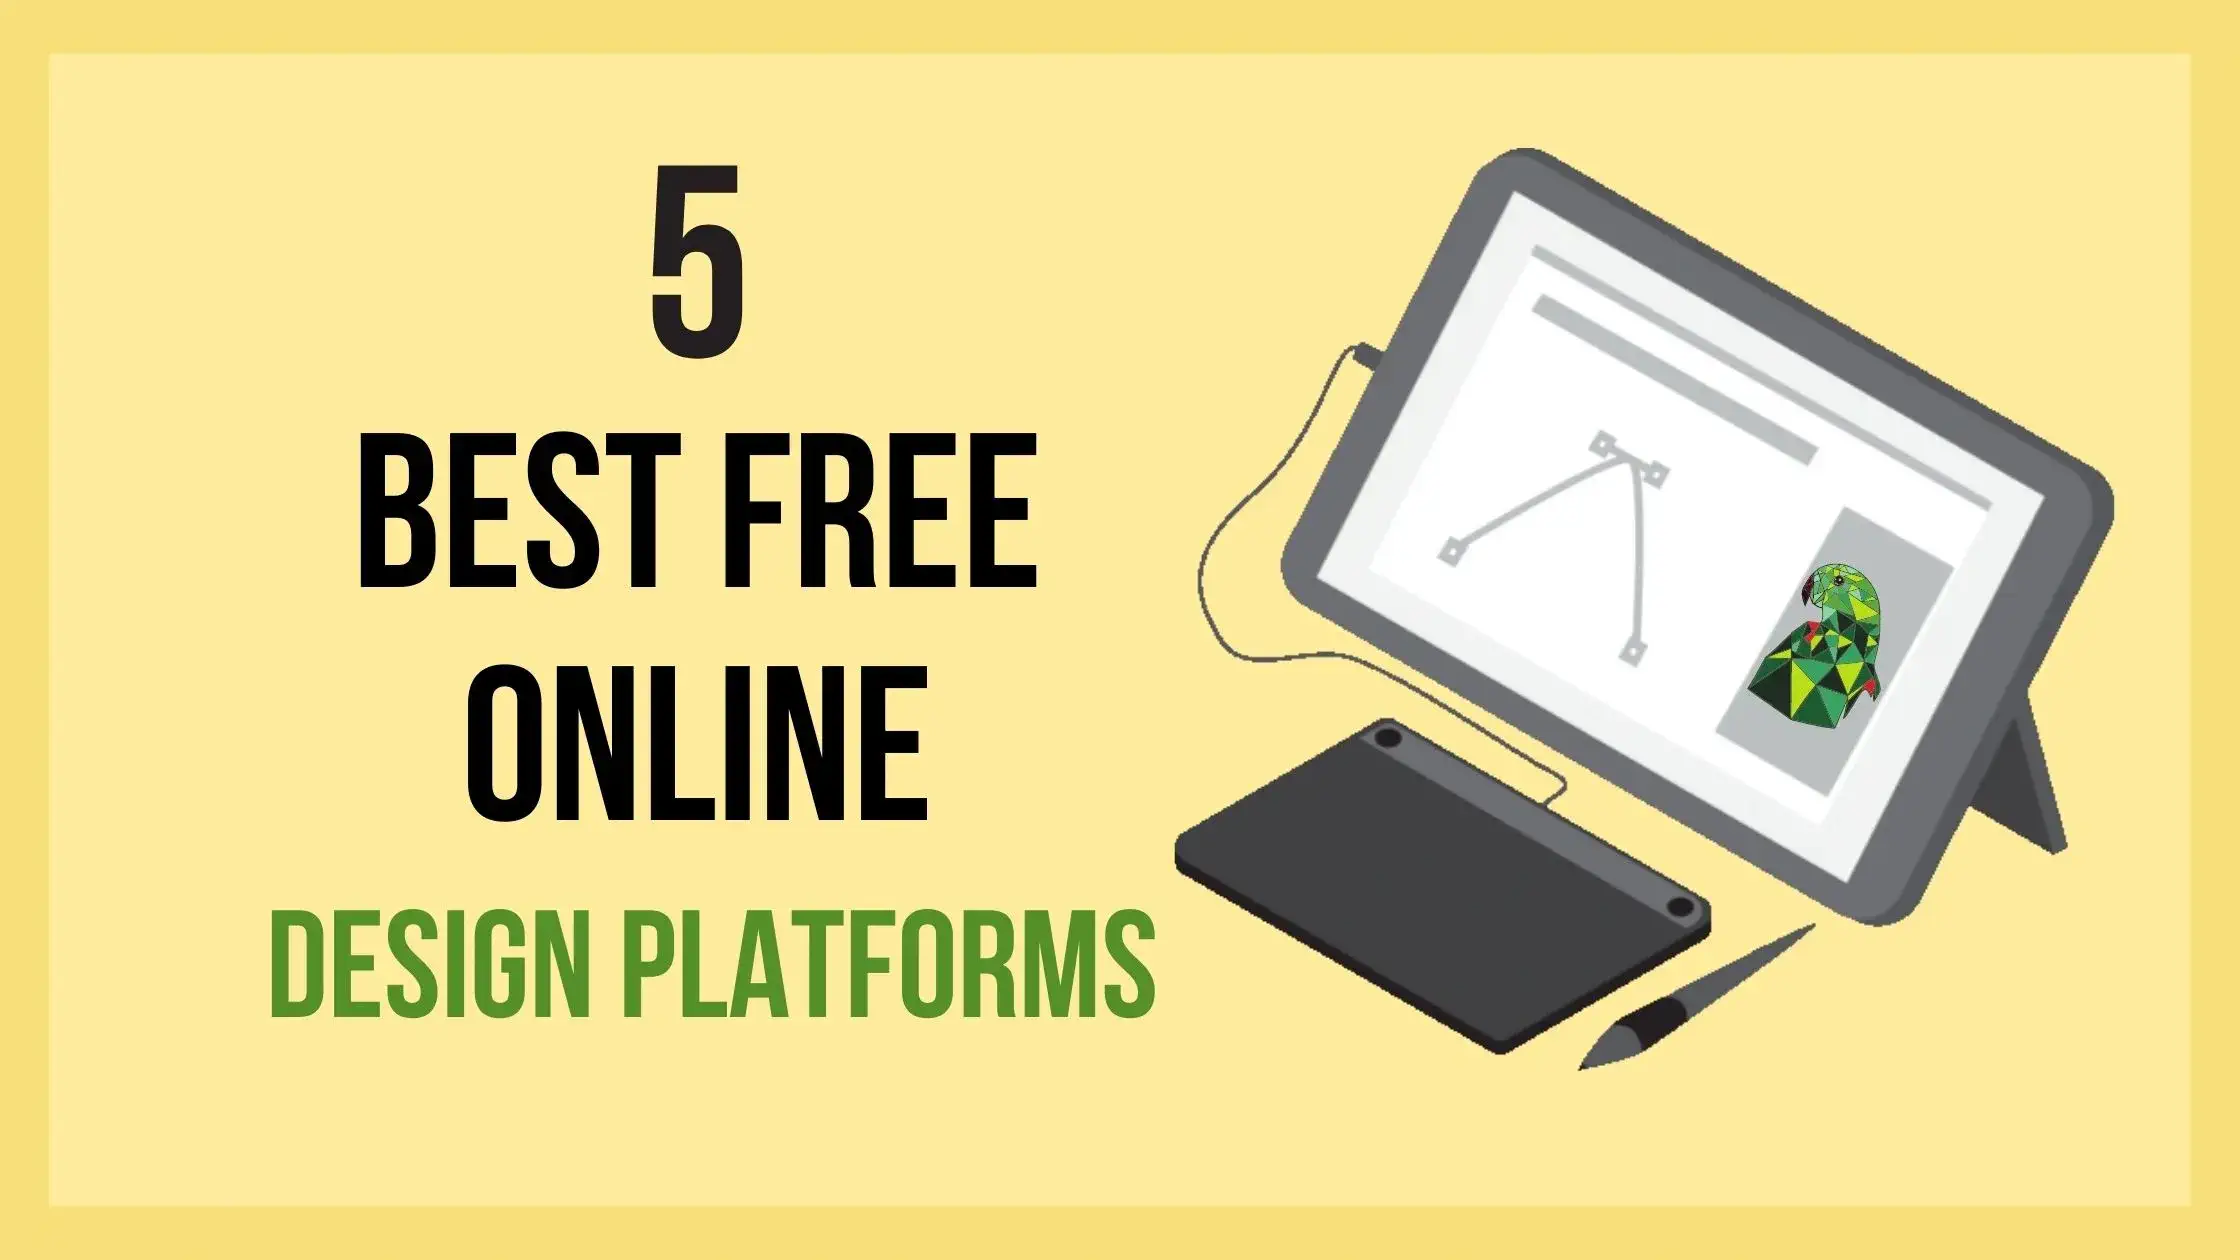 5 best free online design platforms